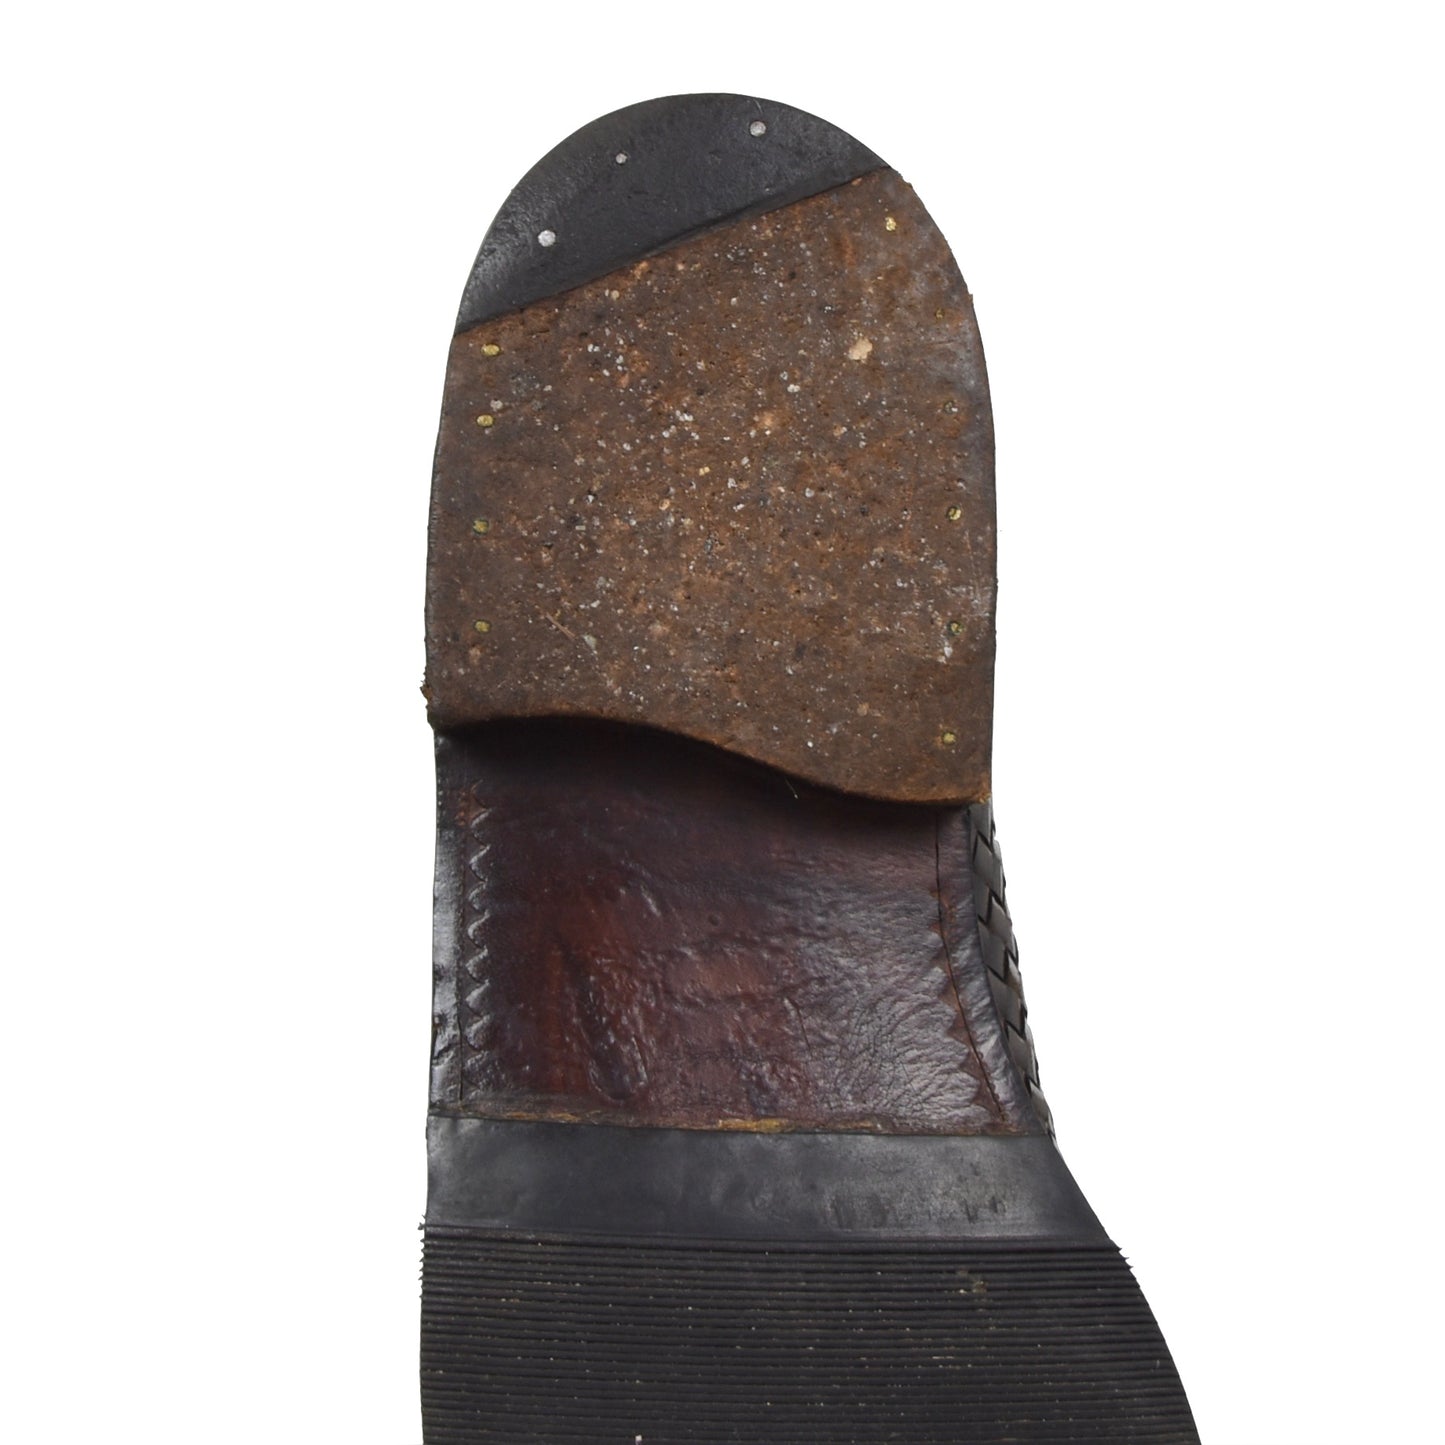 Ludwig Reiter Derby-Schuhe aus geflochtenem Leder Größe 9 - Schwarz